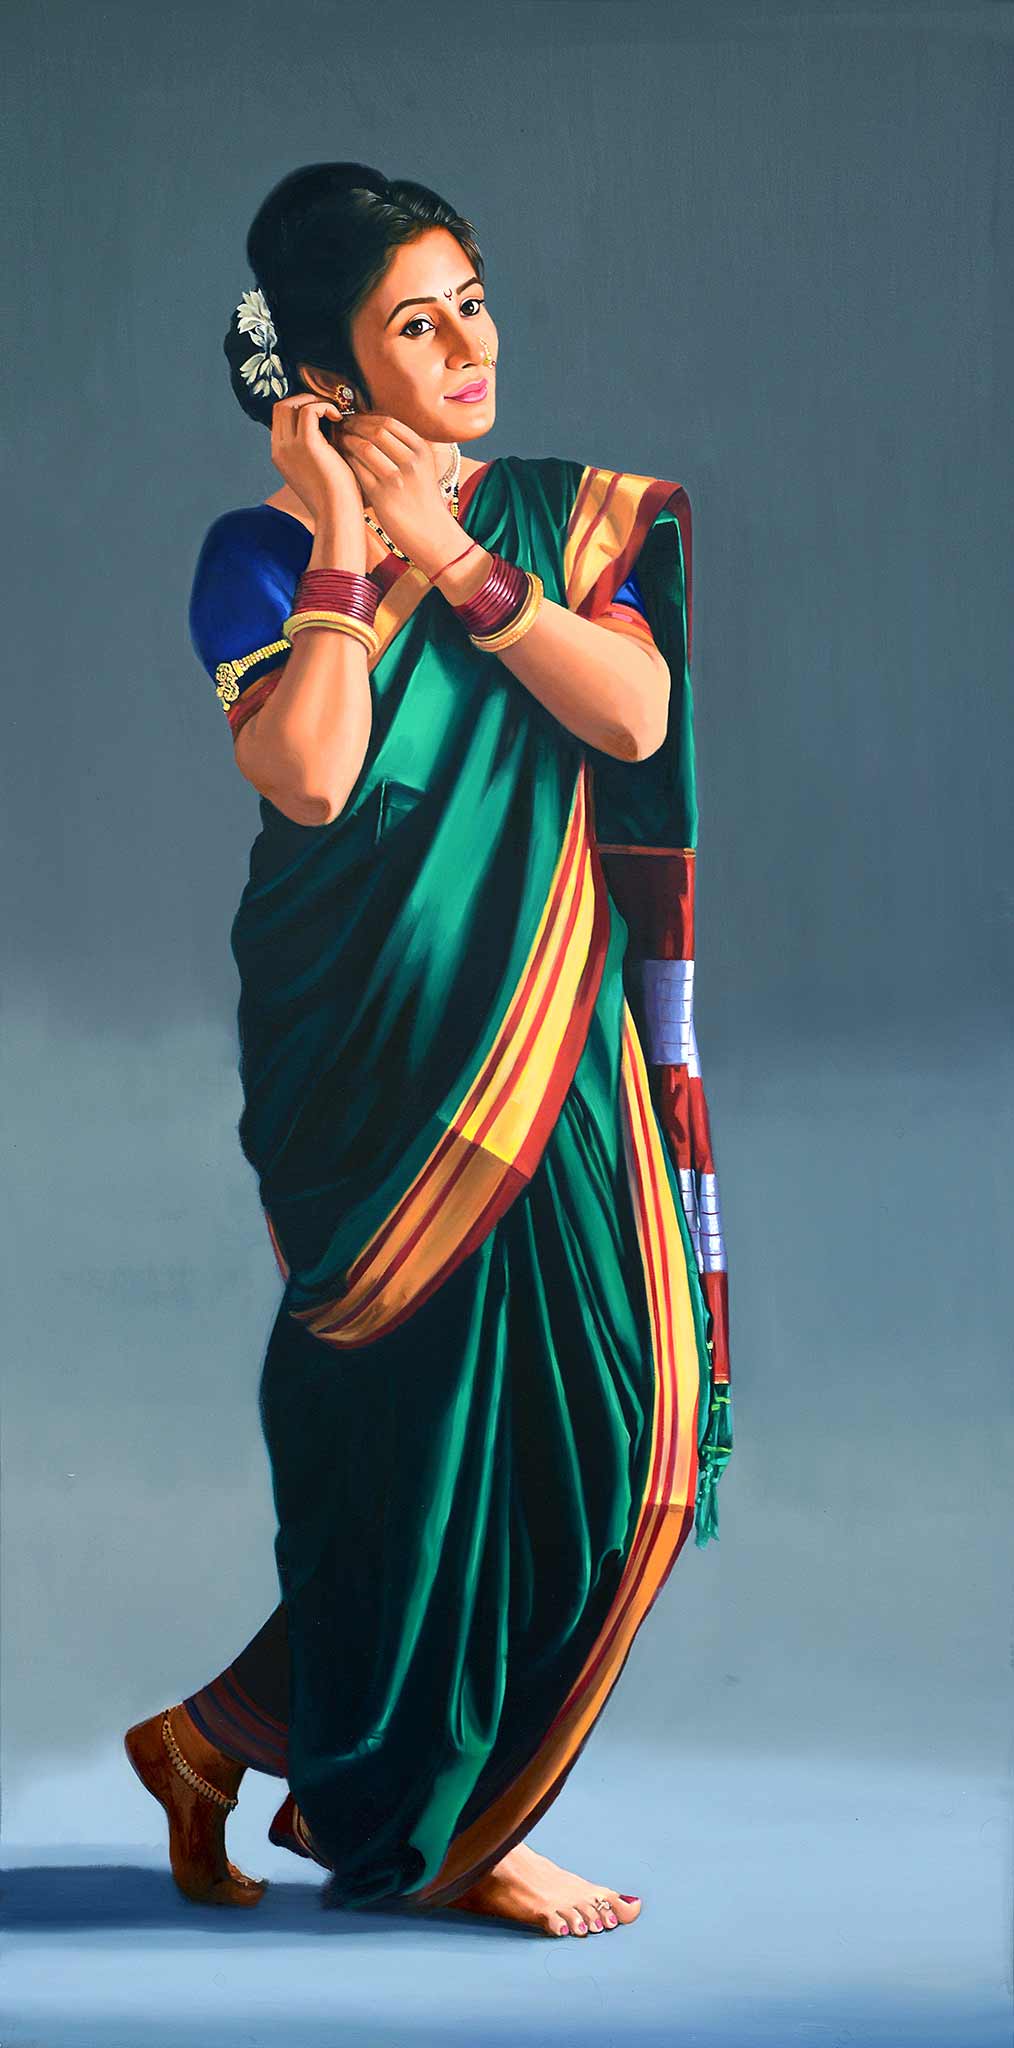 Realism Painting with Oil on Canvas "Manodnya" art by Vinayak G Takalkar